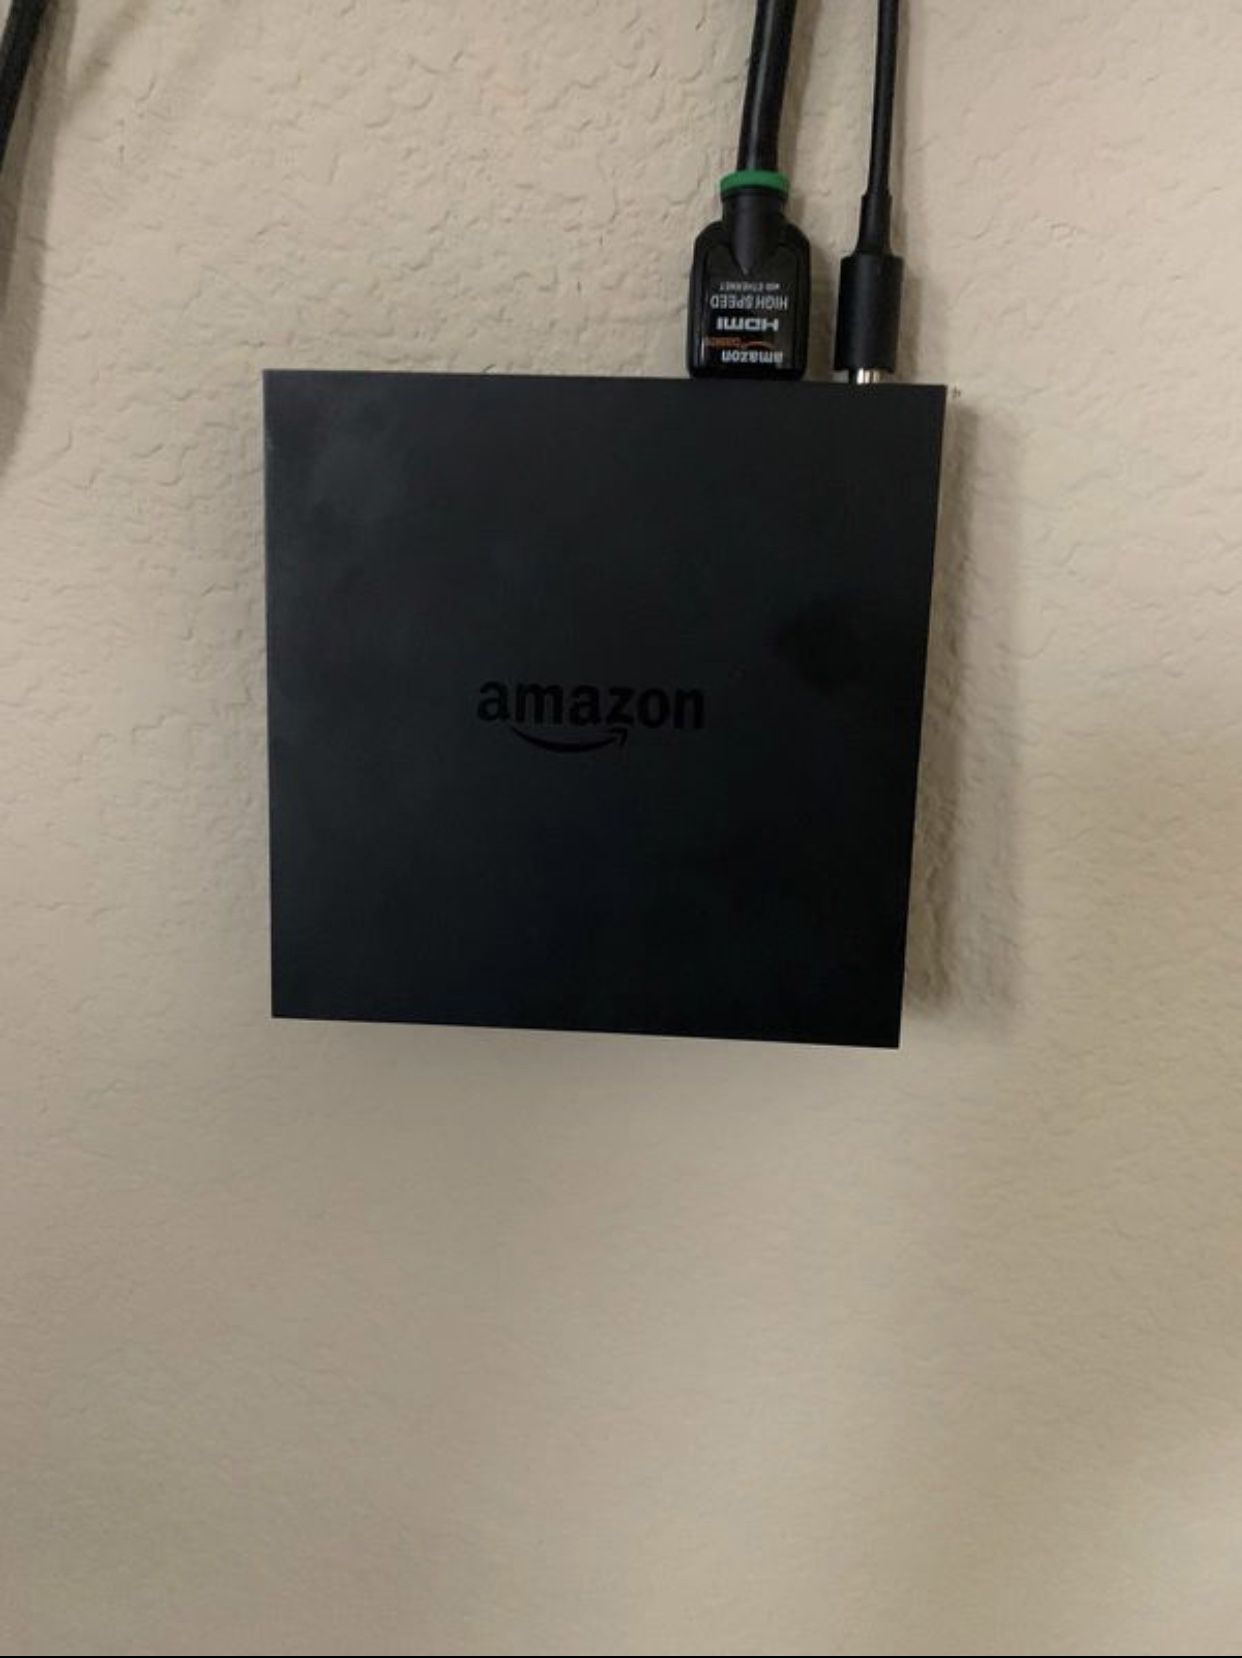 Amazon Fire TV 2nd Generation